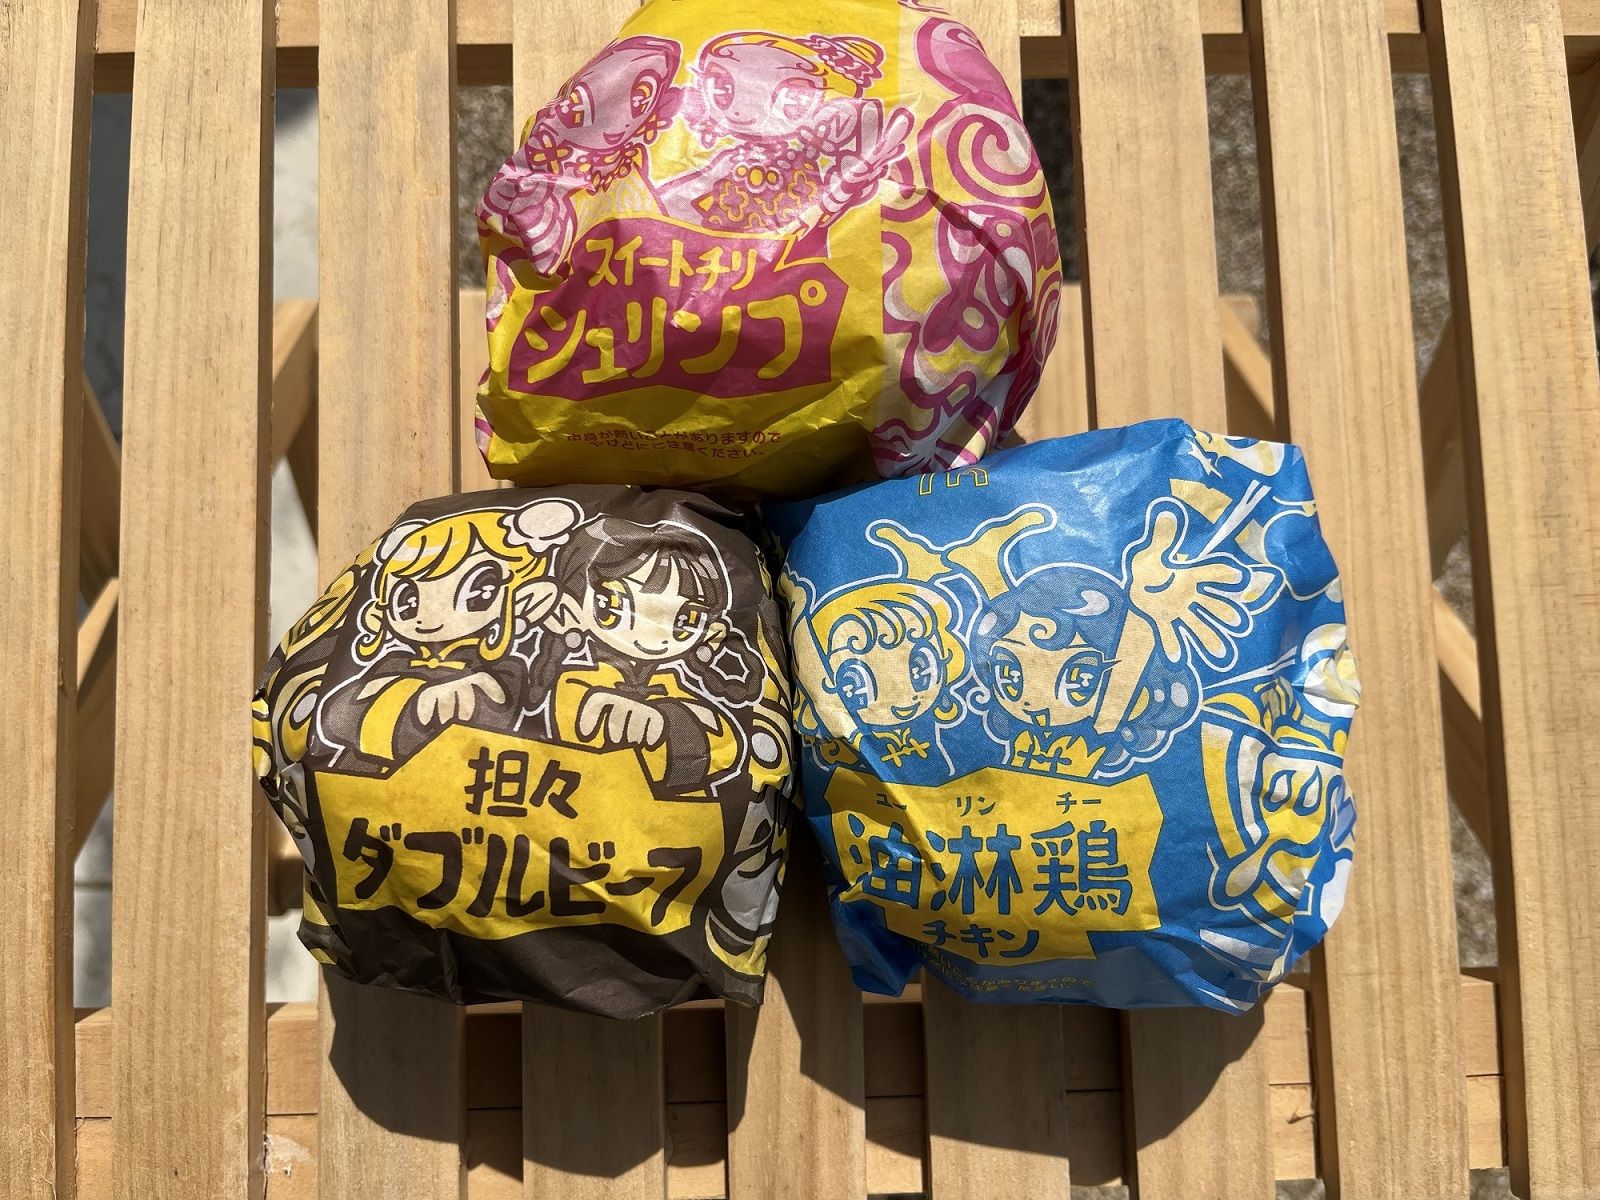 「アジアのジューシー」で発売された3つのハンバーガー